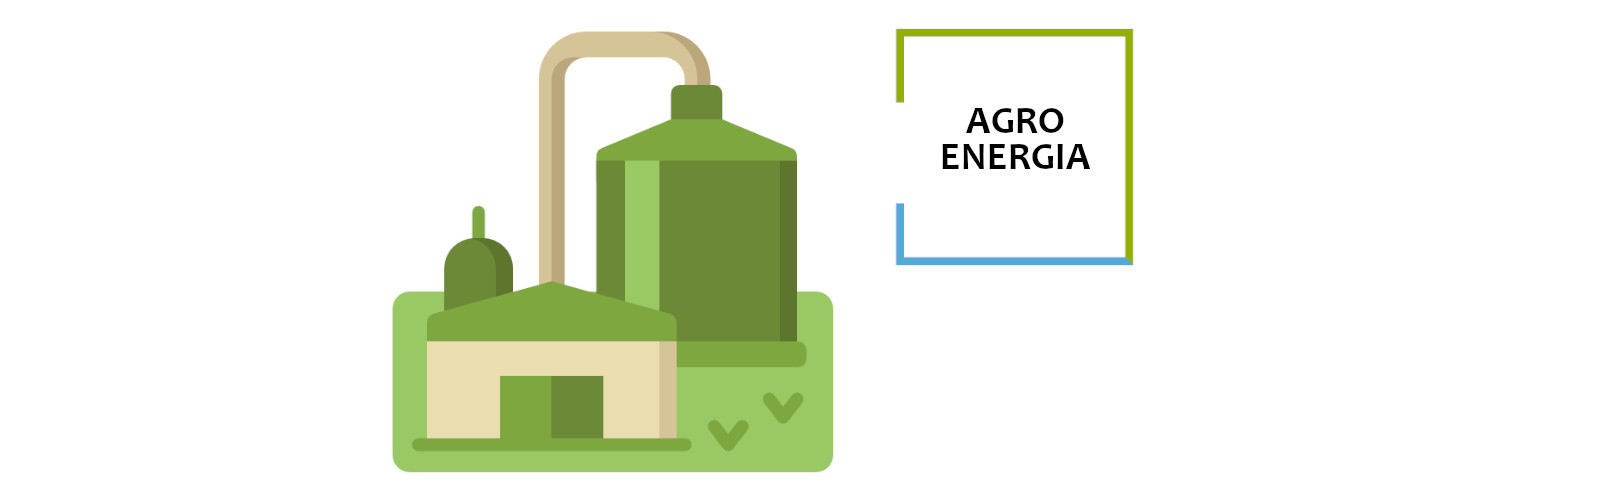 AgroEnergia dotacje do biogazowni